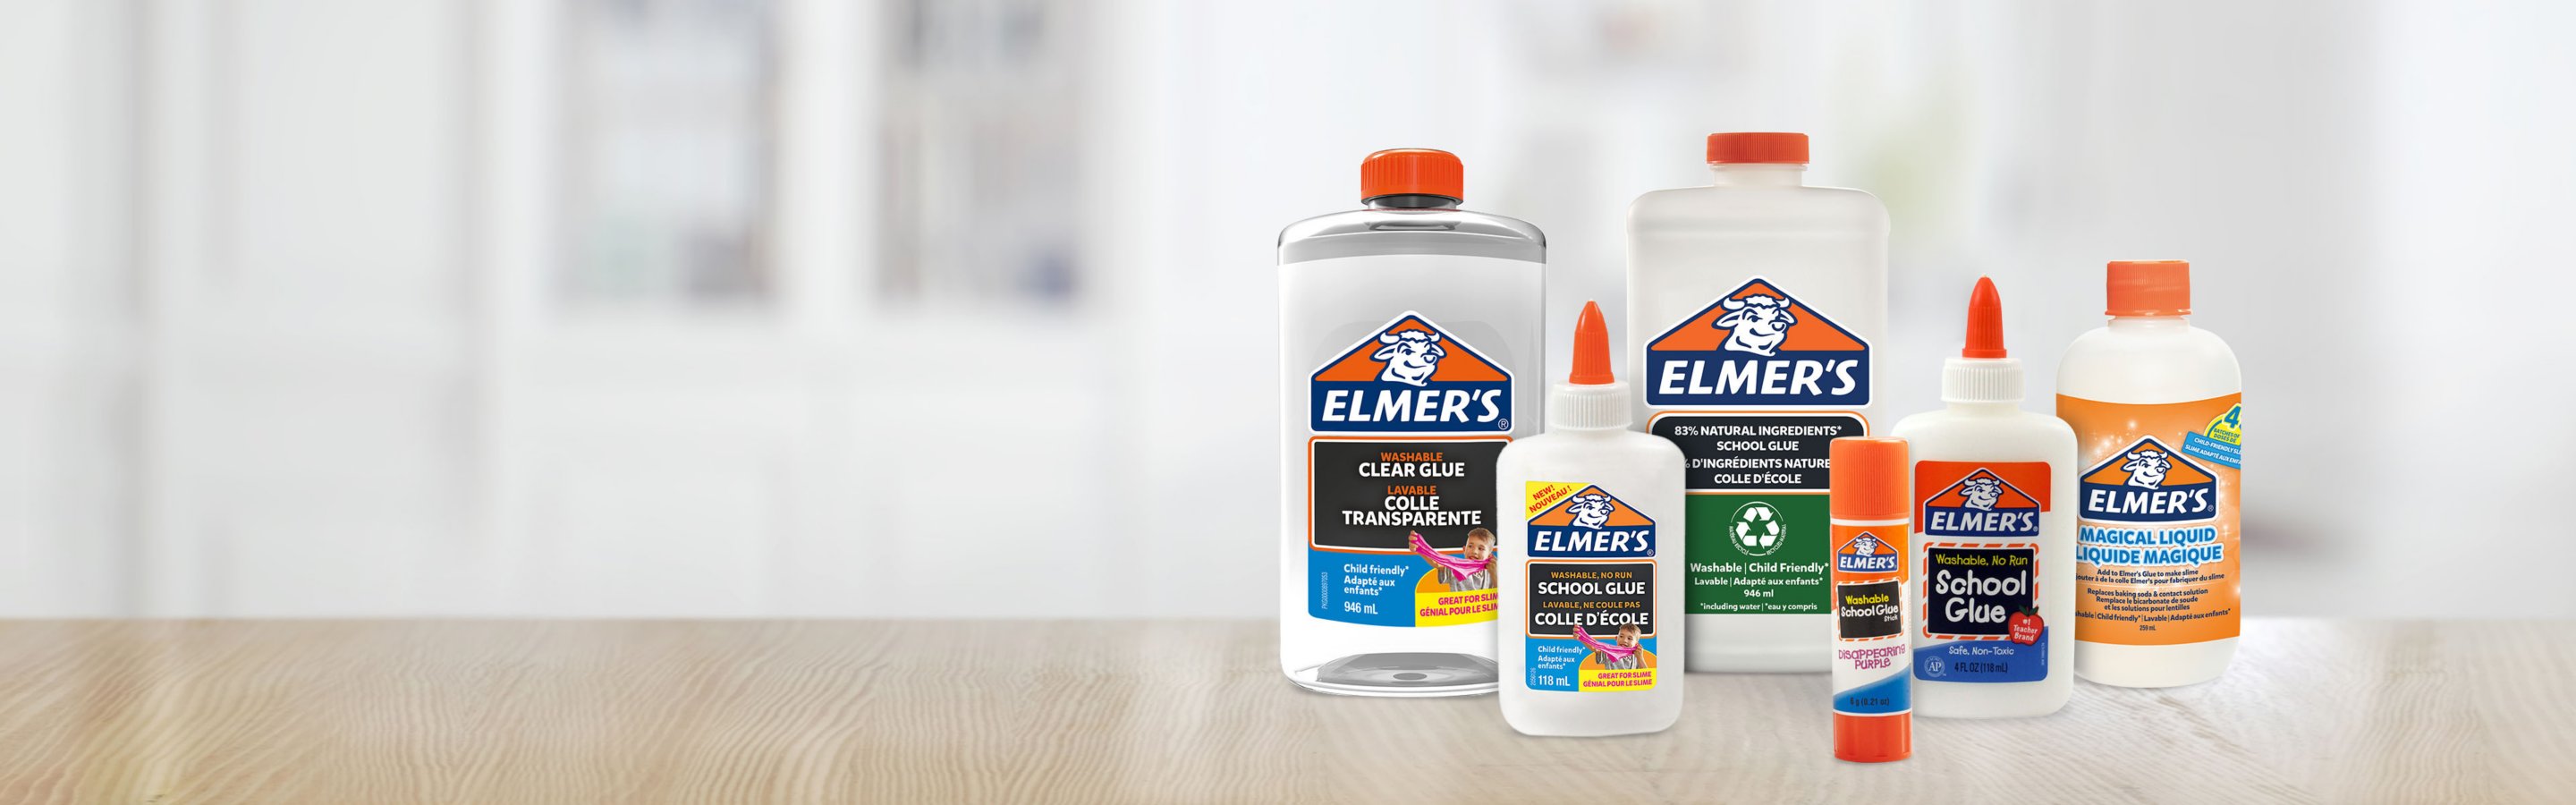 Elmer's colle liquide transparente lavable et adaptée aux enfants